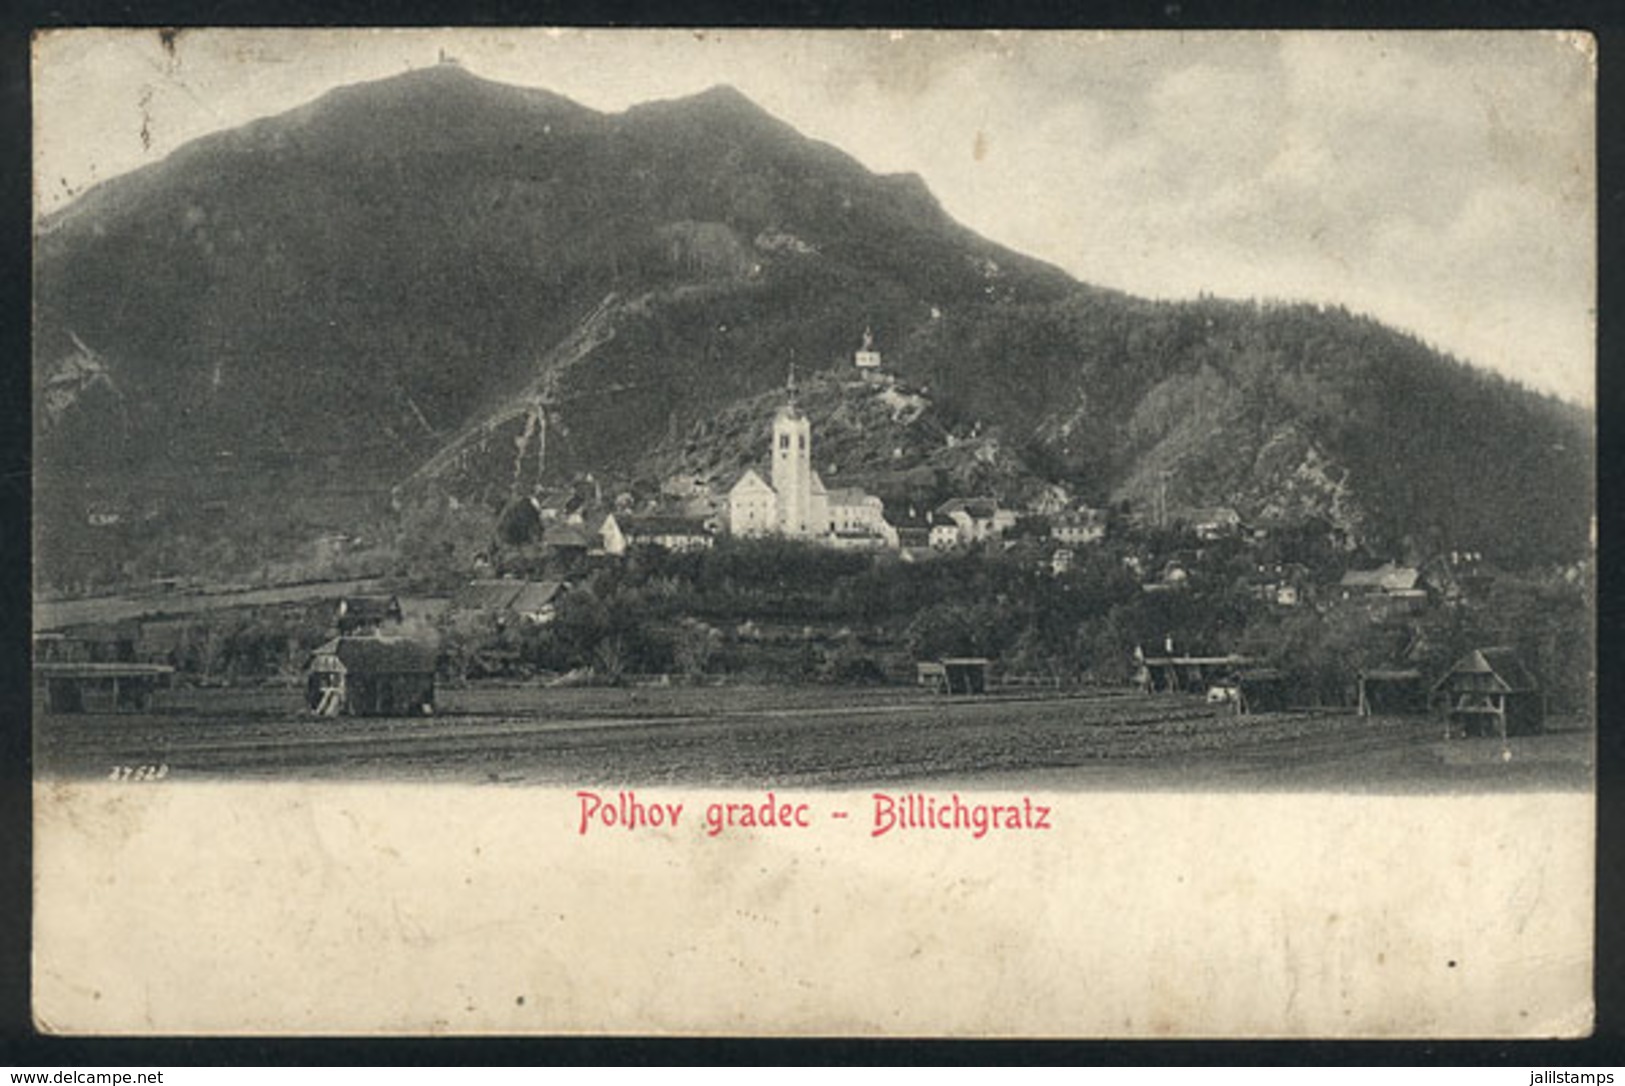 868 SLOVENIA: POLHOV GRADEC: Billichgratz Castle, Circa 1911, Nice View - Slovénie